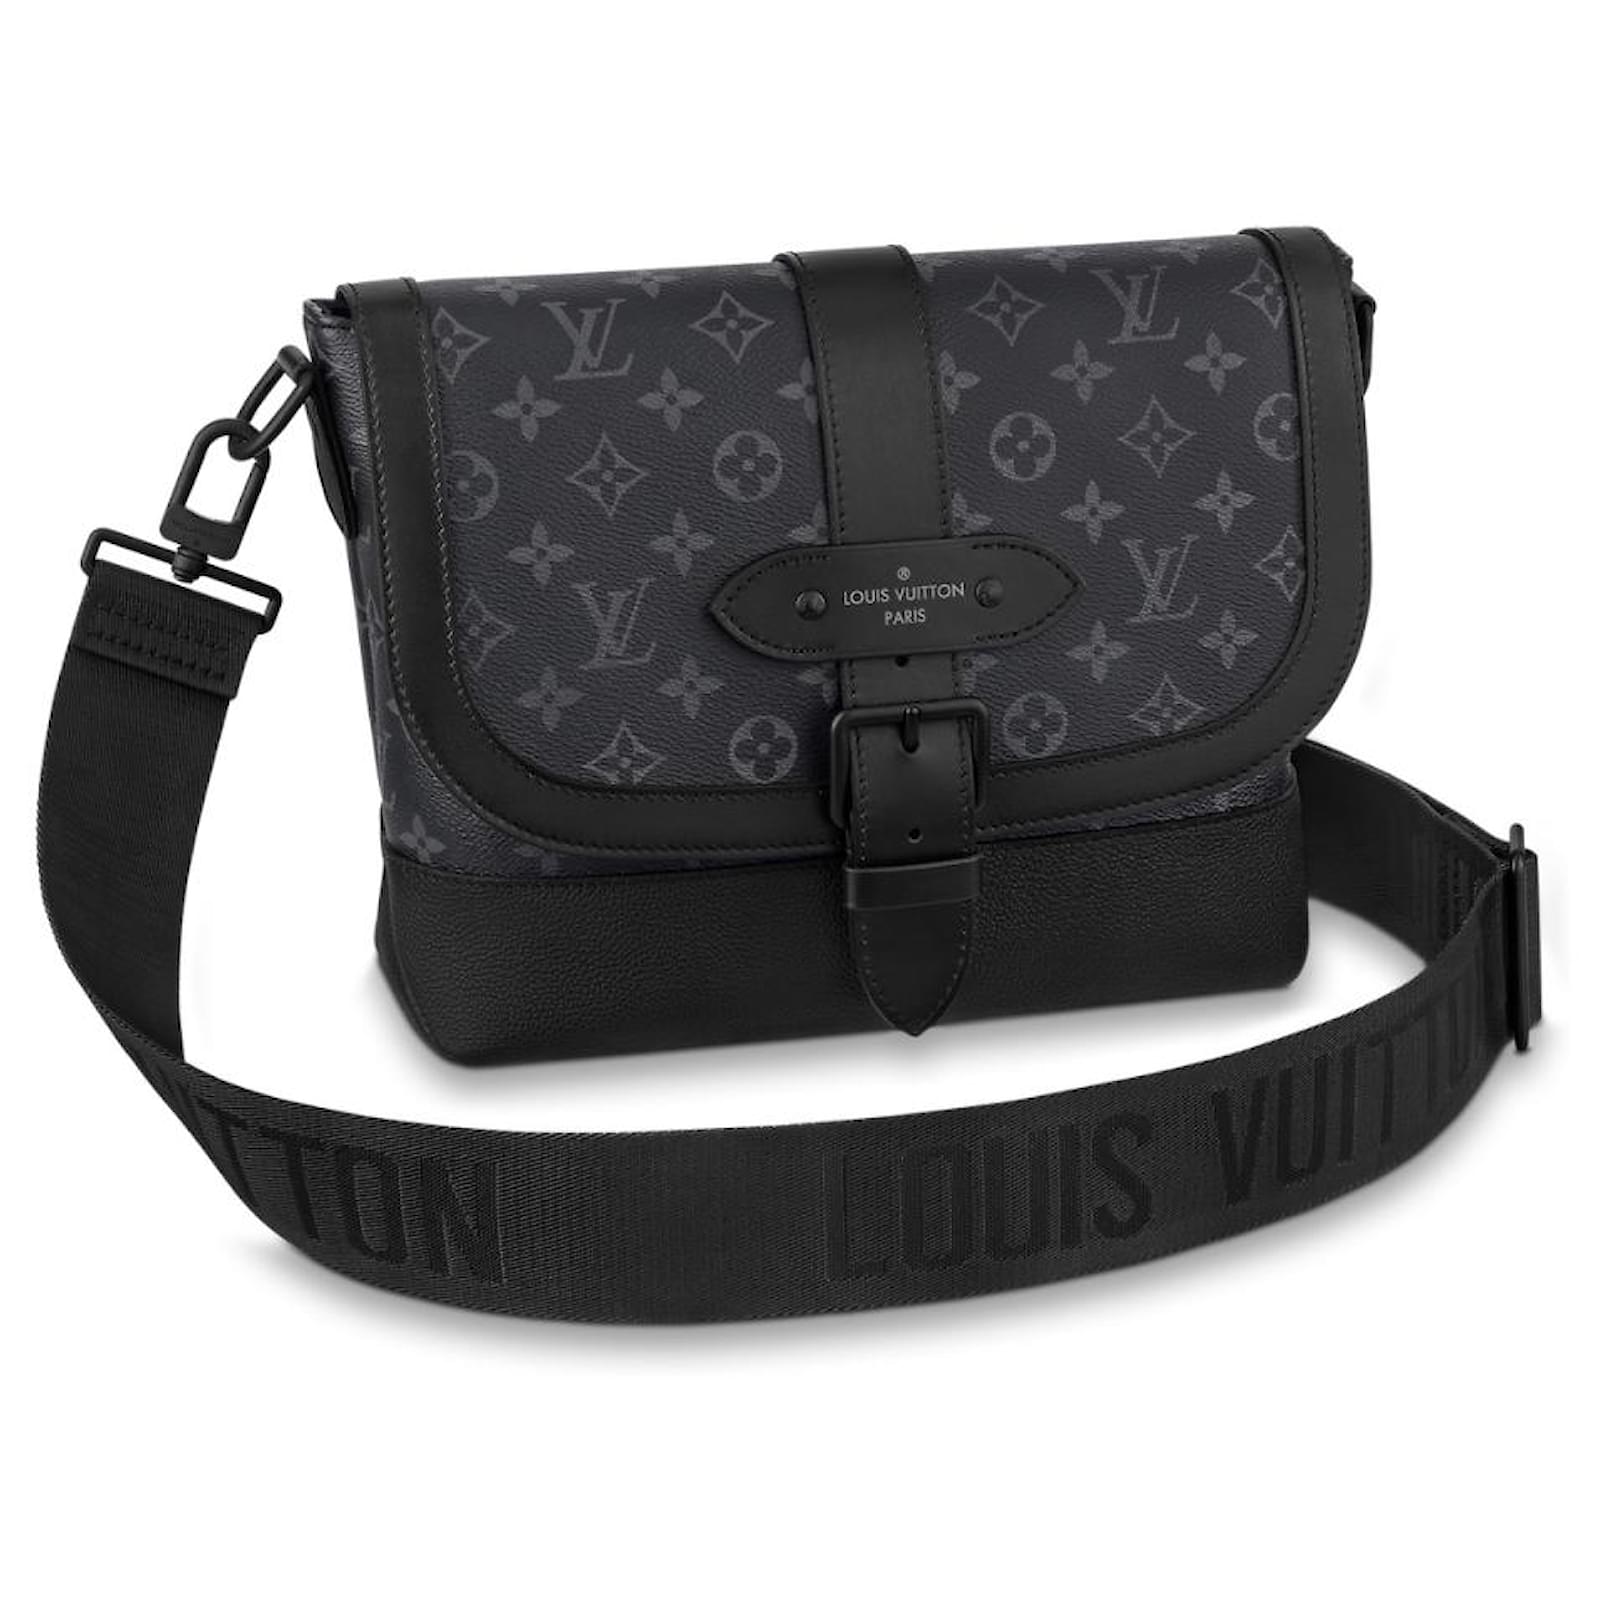 Bags Briefcases Louis Vuitton LV Saumur Messenger Bag New